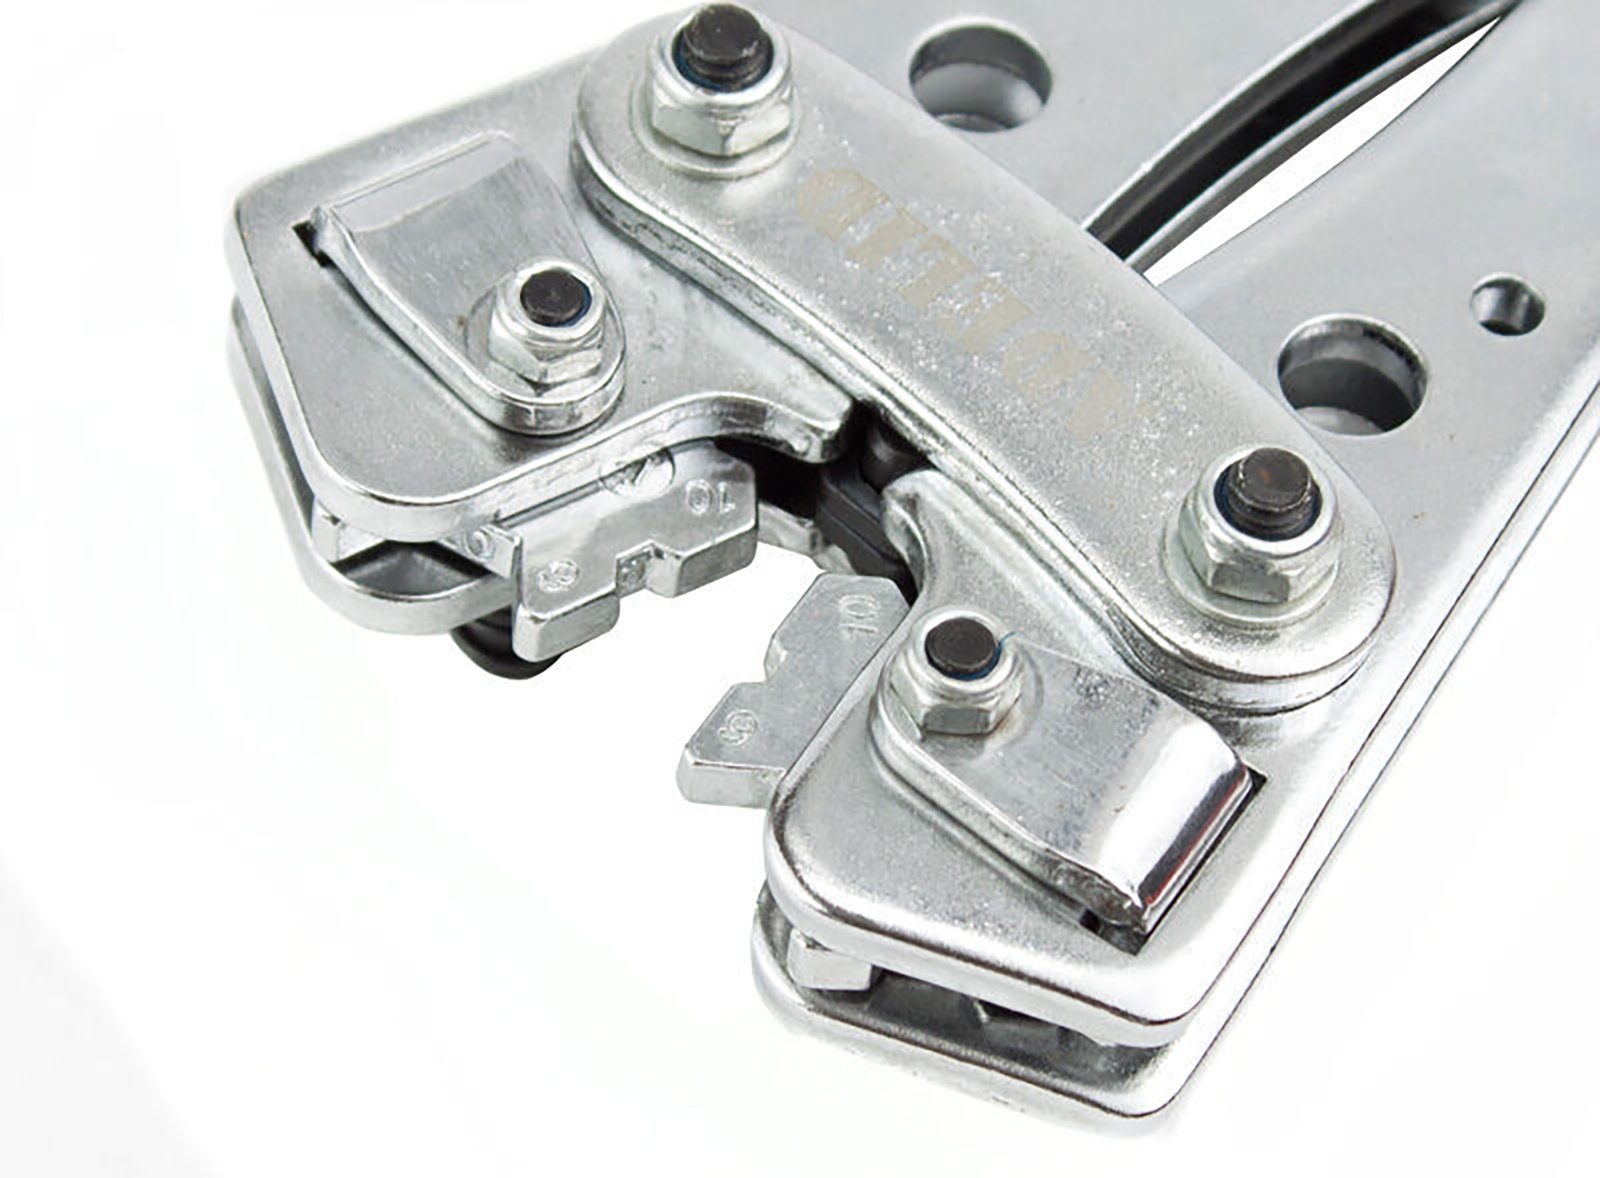 Kabelschuhe 6-50mm² - Presszange ADELID für Rotationsspannbacken Crimpzange 6-50mm² Lötkabelschuh, Presszange Serien-/Parallelverbinder